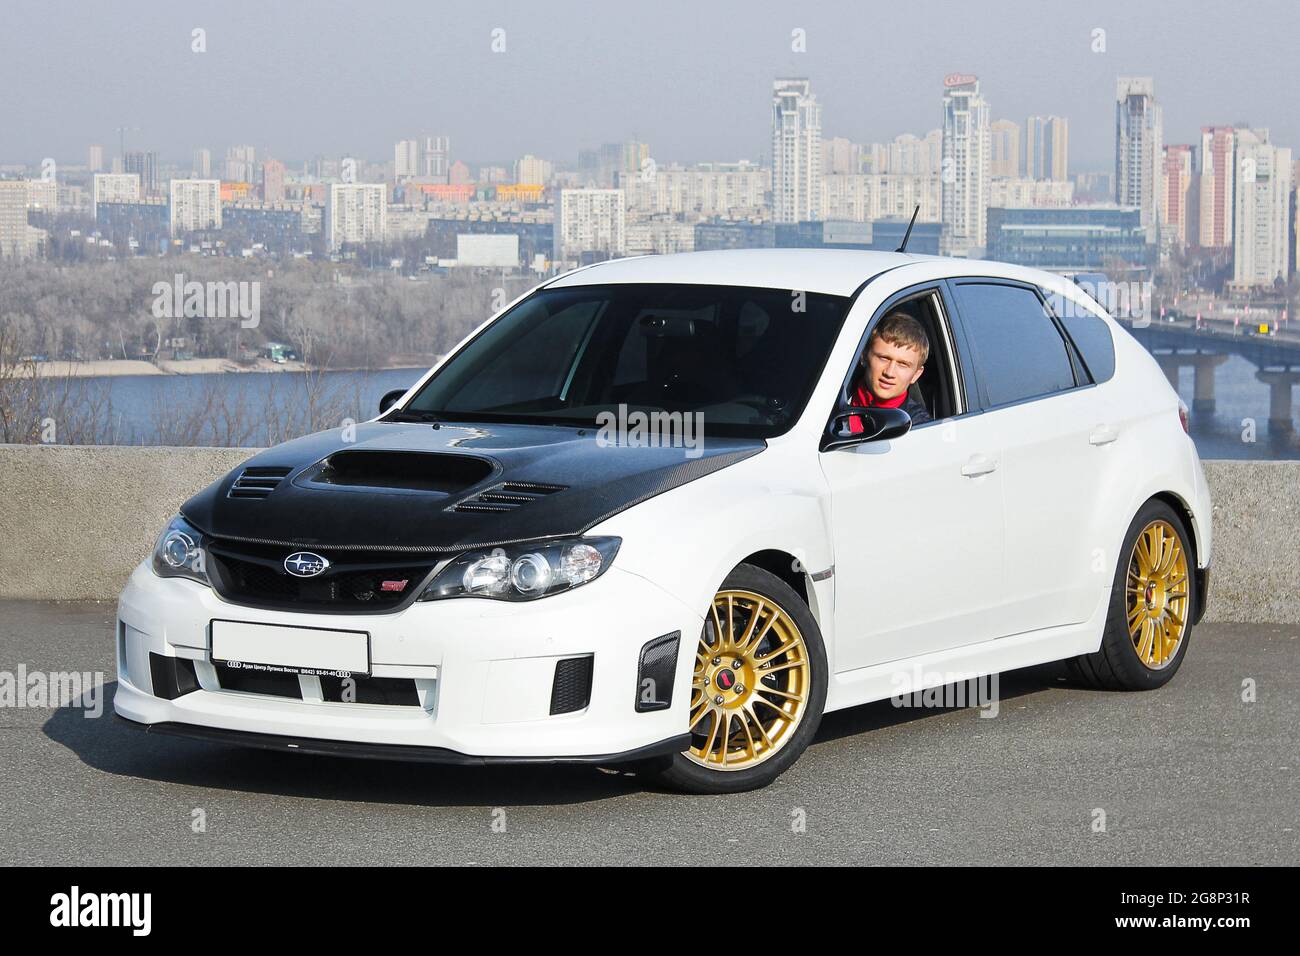 Kiev, Ukraine - March 25, 2015: Subaru Impreza WRX STI in the city Stock Photo